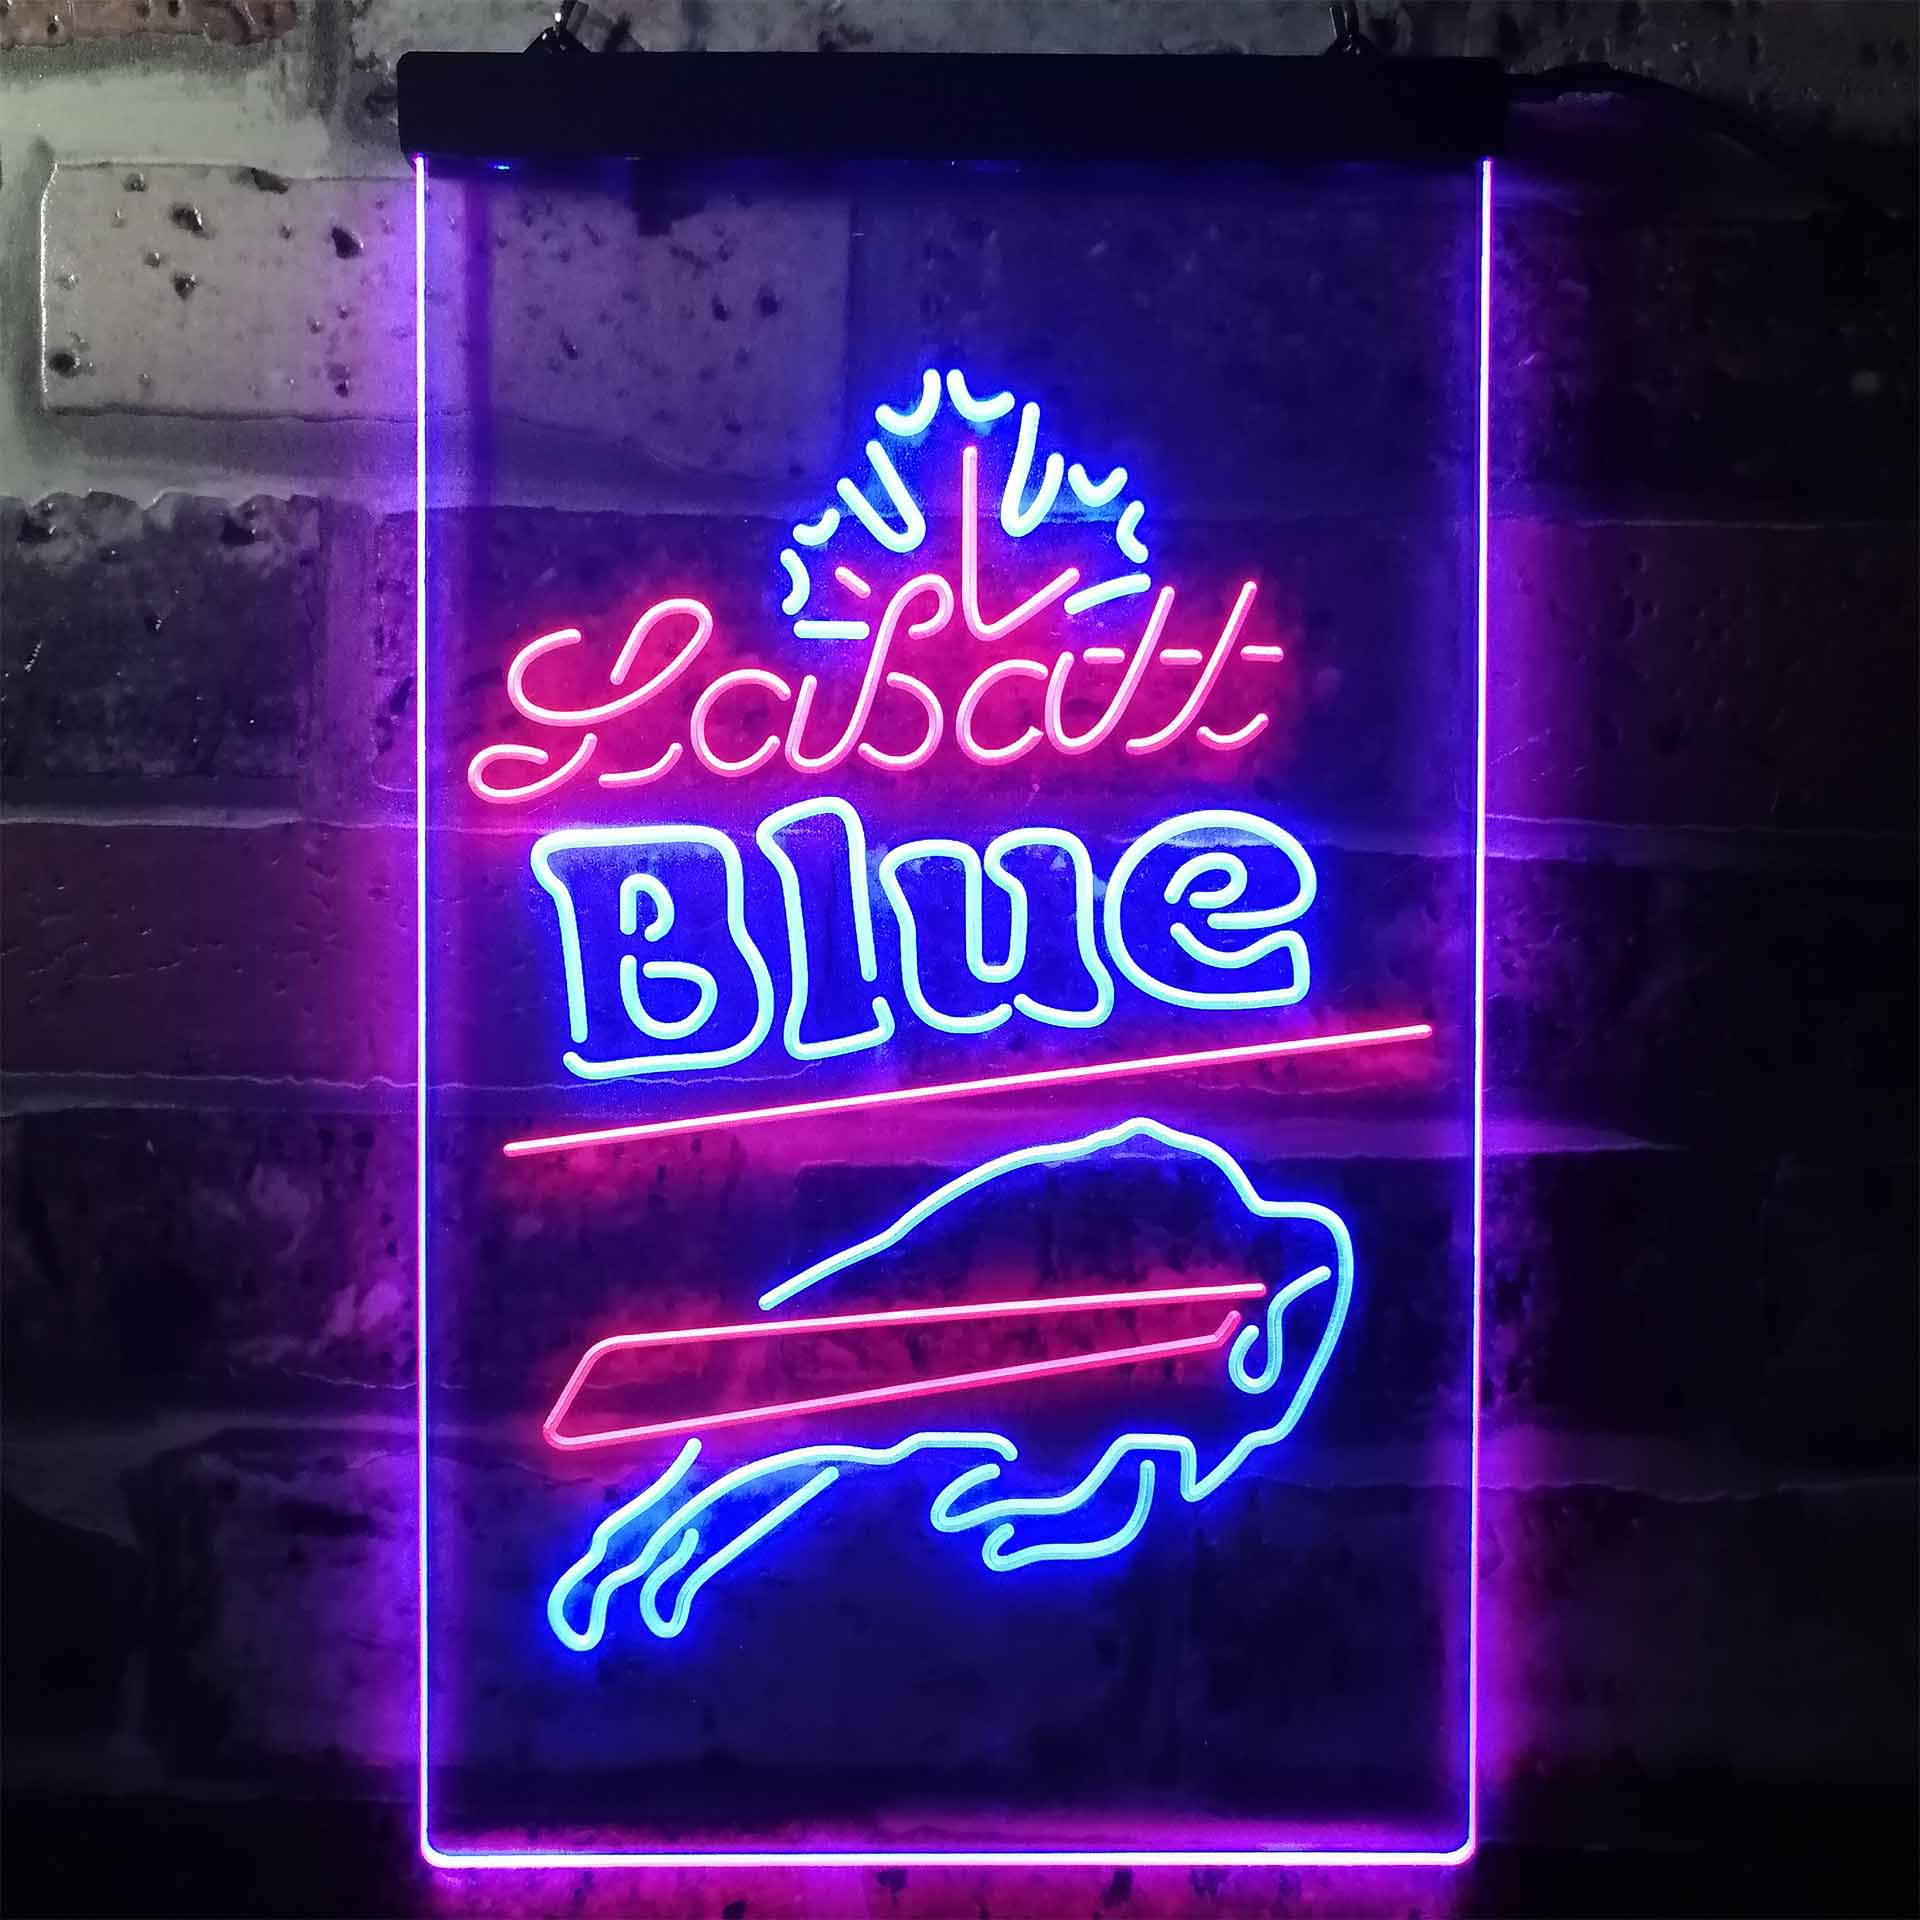 New Labatt Blue Light Buffalo Sabres Beer Man Cave Neon Sign 24"x20" 